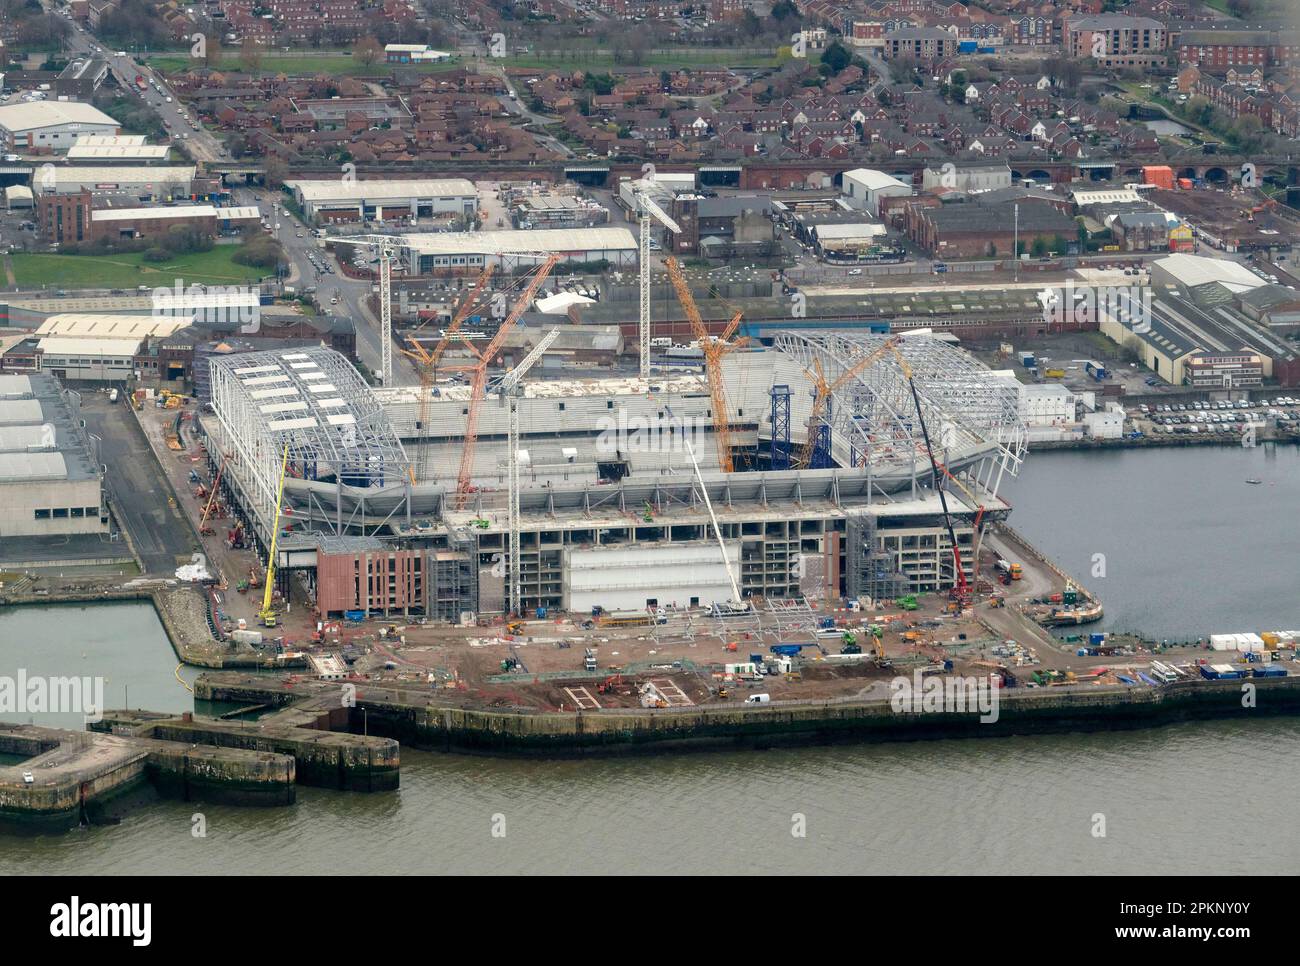 Il nuovo stadio Everton Football Club è in costruzione al molo di Bramley Moor, Liverpool, Inghilterra nord-occidentale, dall'alto Foto Stock